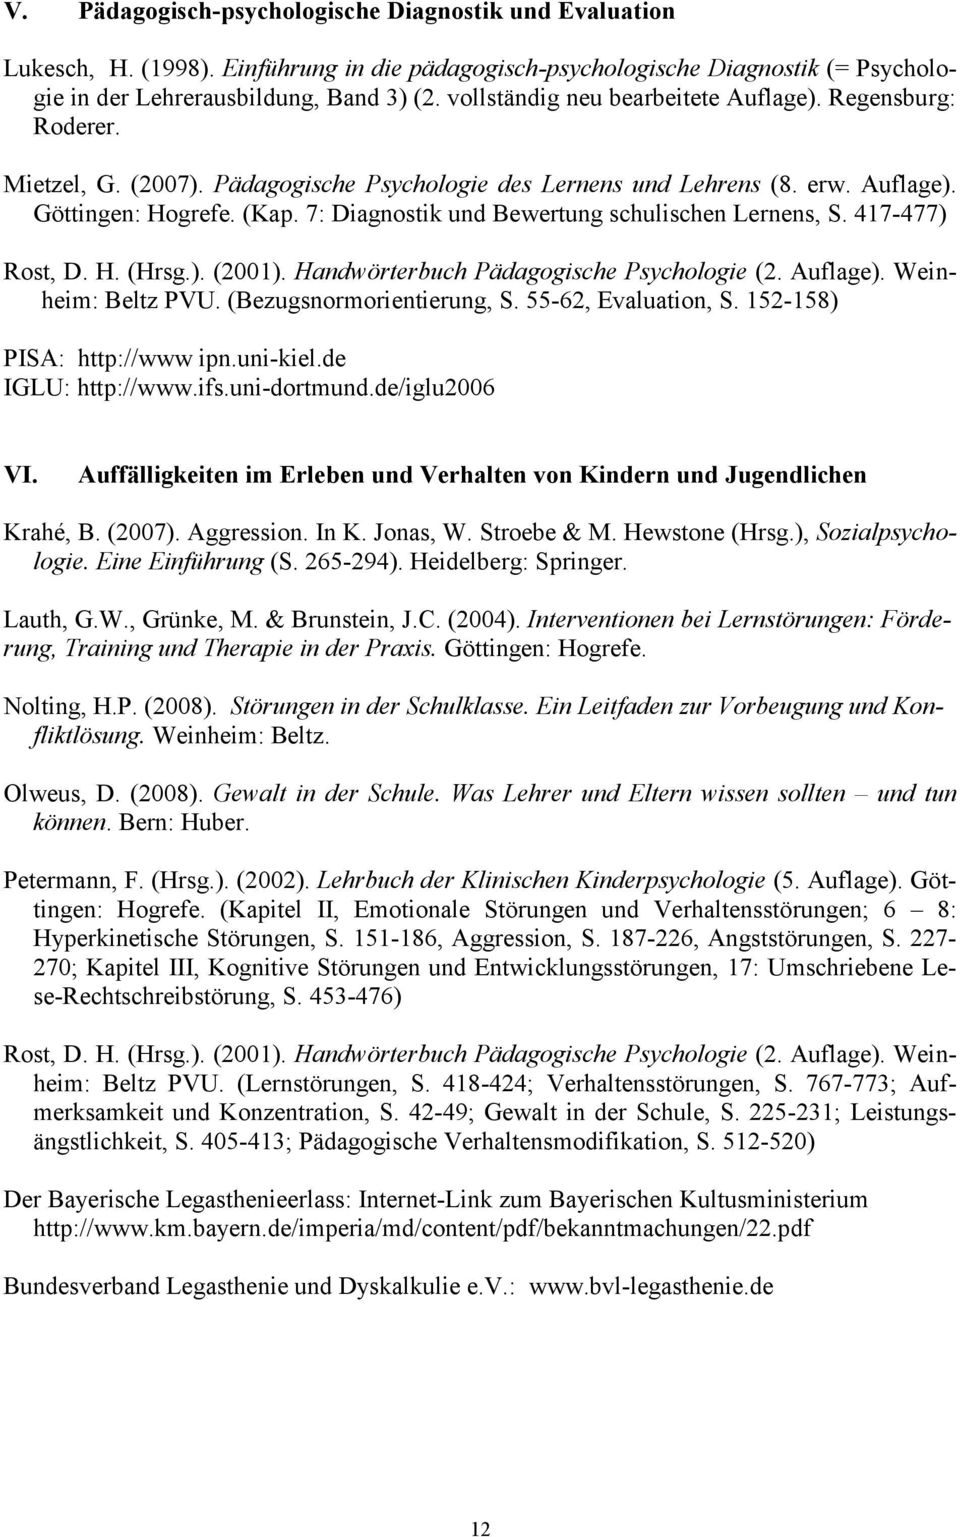 7: Diagnostik und Bewertung schulischen Lernens, S. 417-477) Rost, D. H. (Hrsg.). (2001). Handwörterbuch Pädagogische Psychologie (2. Auflage). Weinheim: Beltz PVU. (Bezugsnormorientierung, S.